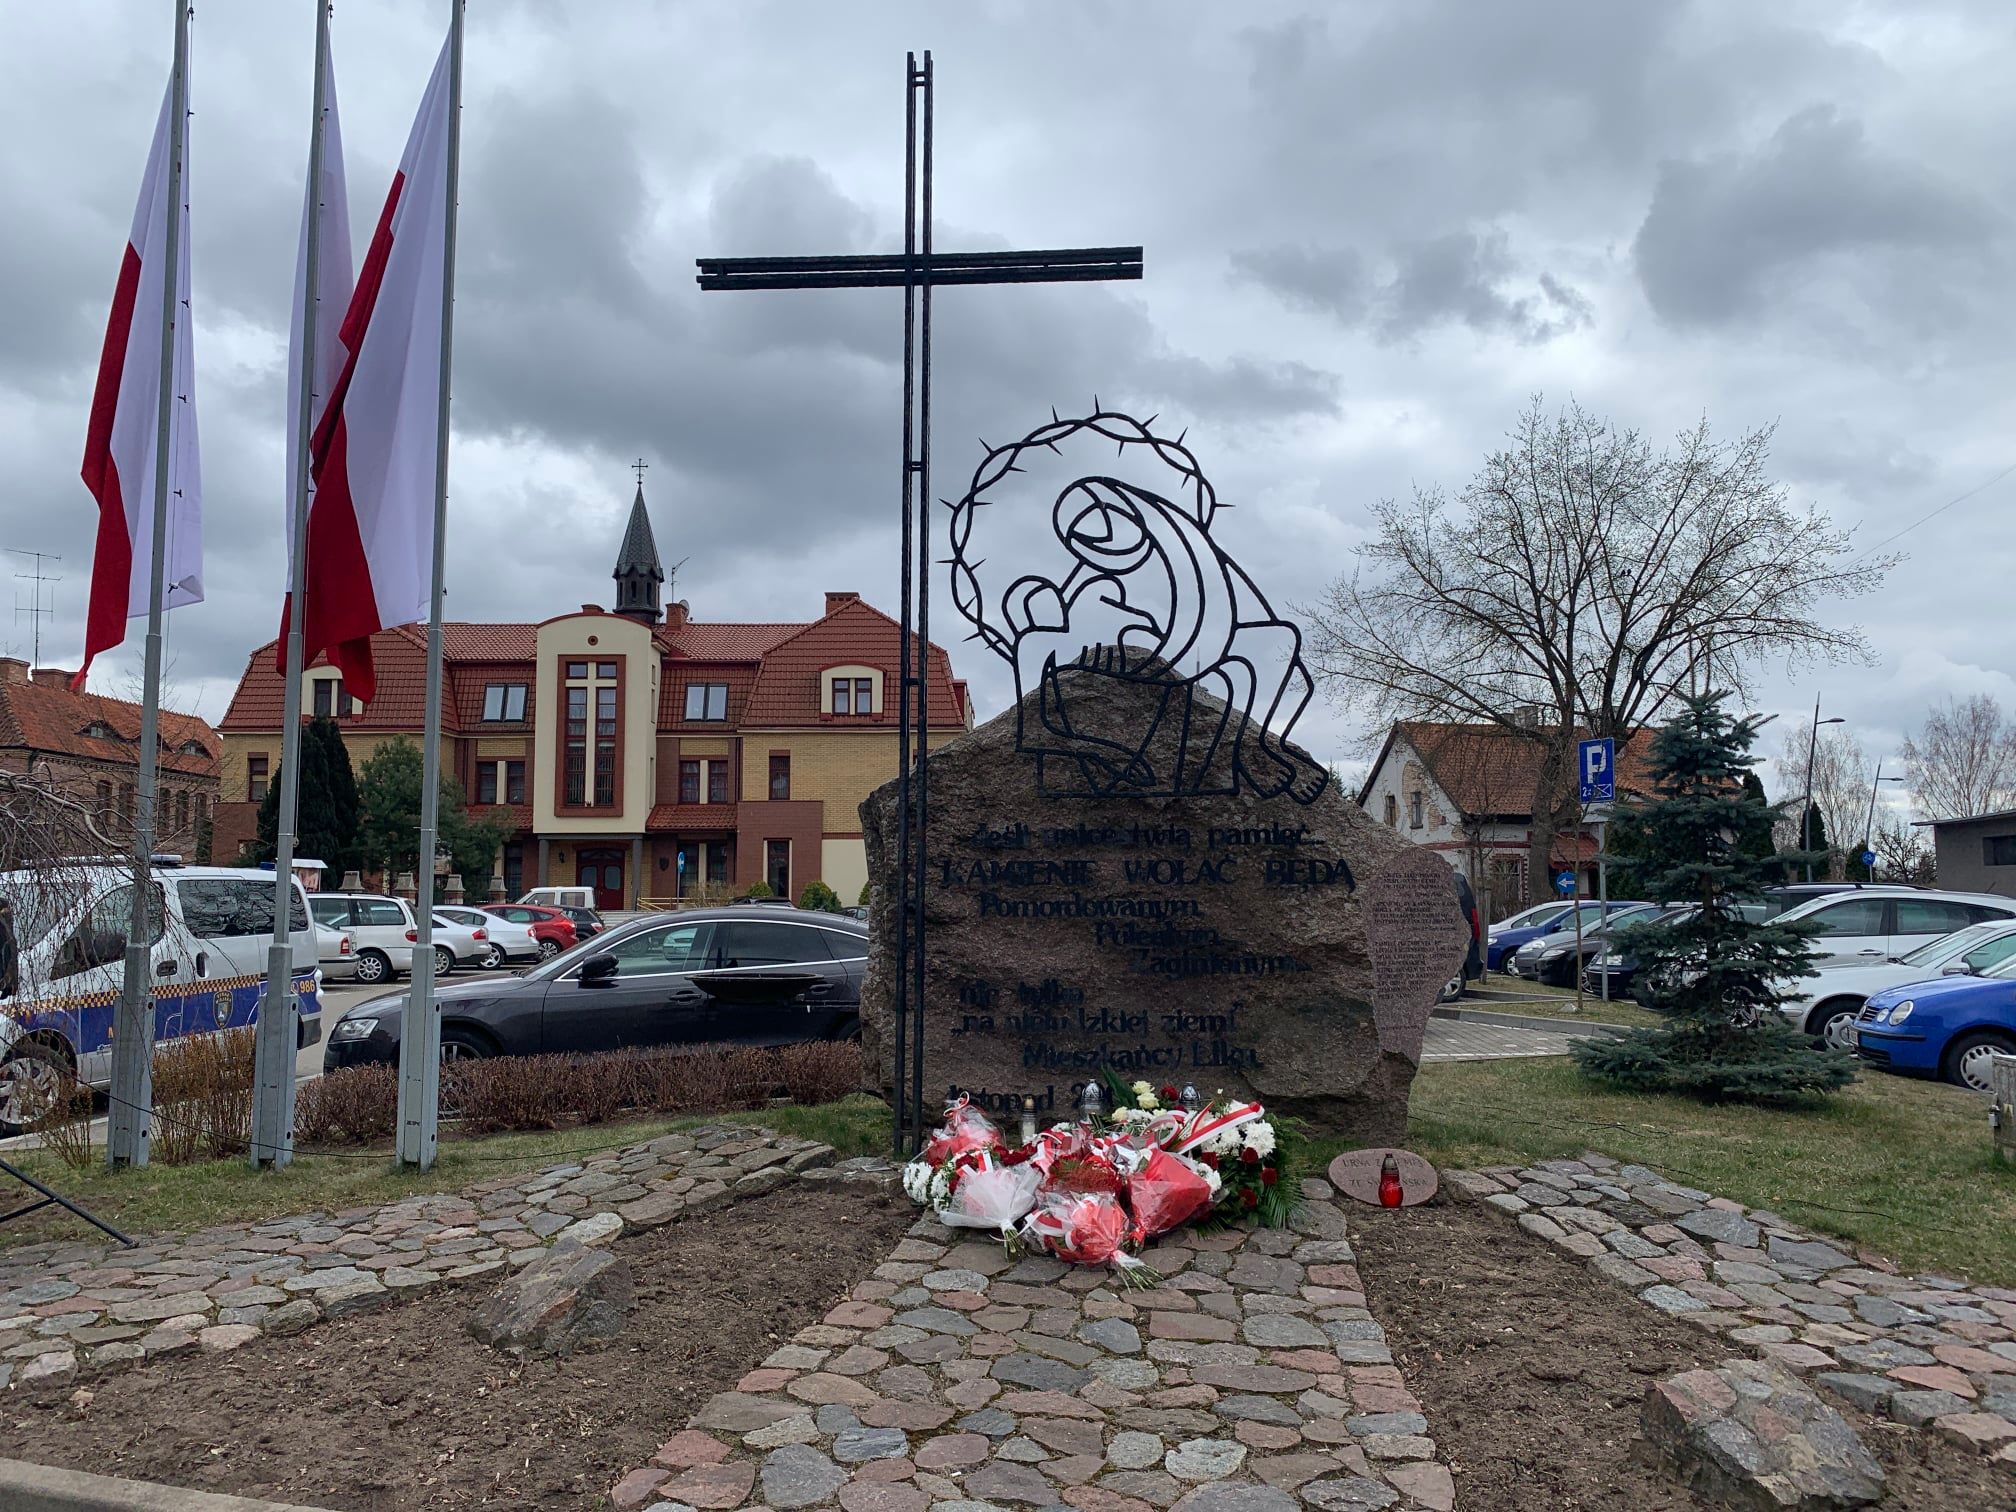 Ełk ricorda - l'82 ° anniversario del massacro di Katyn e il 12 ° anniversario della catastrofe di Smolensk